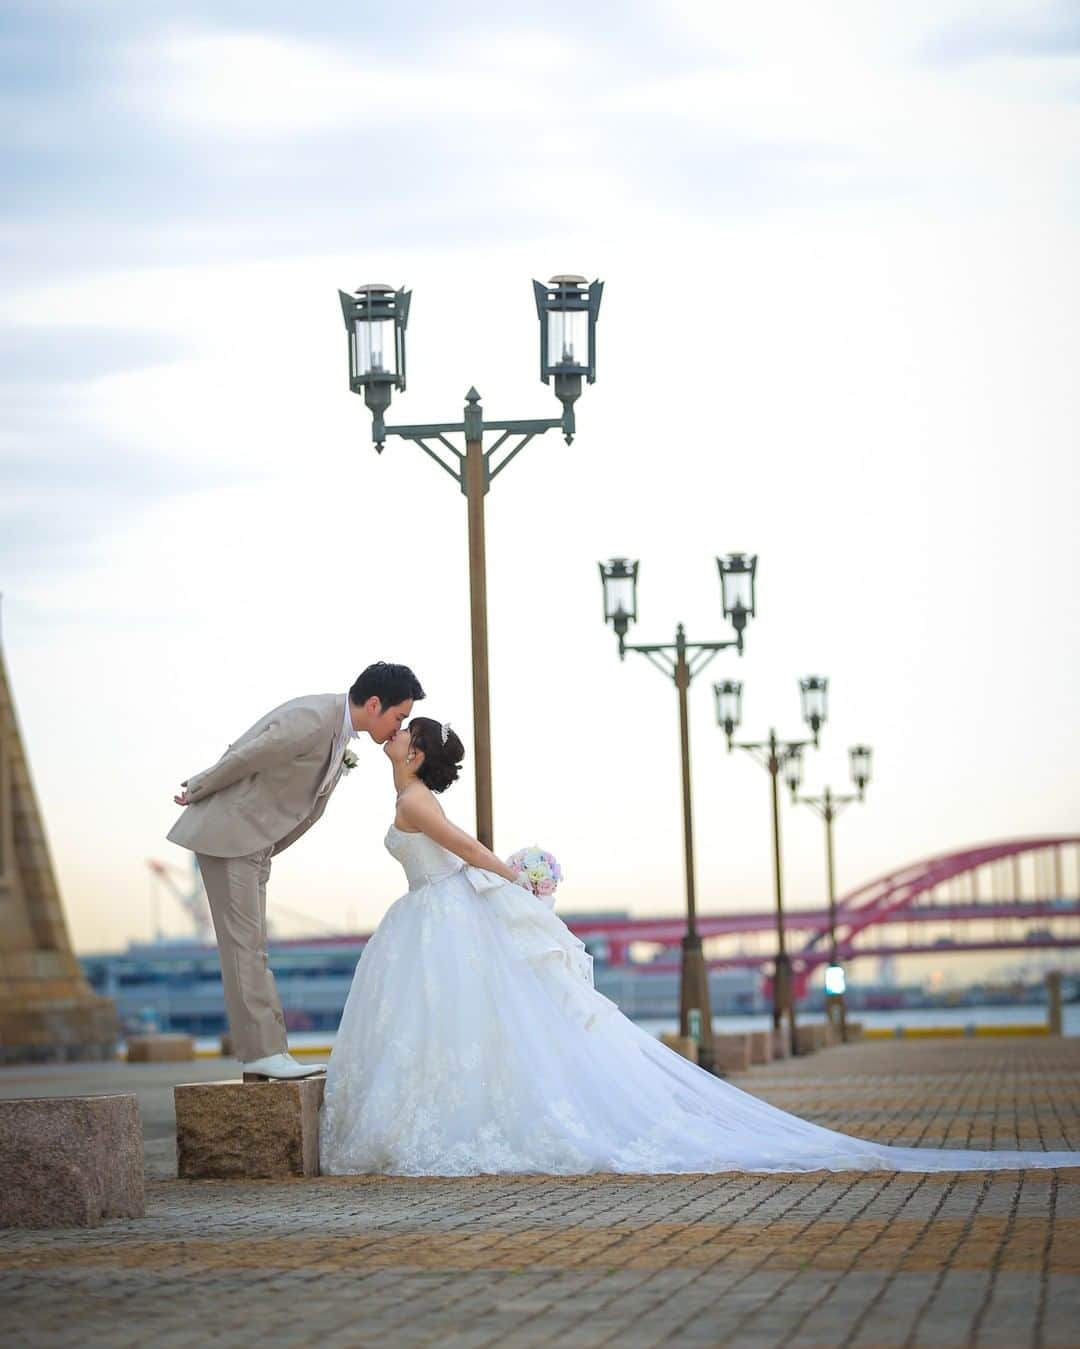 アニヴェルセル 神戸 公式のインスタグラム：「* 『おふたりの想い出の地で撮るロケーションフォト📷』 * アニヴェルセル 神戸では、ご結婚式のお写真とは違った神戸ならではの雰囲気で、素敵なロケーションフォトを撮ることができます♡ * 神戸には『ハーバーランド』『神戸大橋』『神戸ポートタワー』など、ロマンティックなロケーションが沢山あるので、とても素敵なお写真を残すことができます✨ * 昔撮ったお写真と同じ角度や同じポーズで、想い出を再現してみるのも素敵ですよね💕 * おふたりの想い出を振り返りながら、素敵なウェディングフォトを撮ってみてくださいね✨ * * * * @anniversaire_kobe * * * * #アニ嫁 #アニスタグラム #アニヴェルセル #オリジナルウェディング #アニヴェルセル神戸 #神戸女子 #恋人の聖地 #秋婚 #神戸プレ花嫁 #神戸ウェディング #式場探し #神戸花嫁 #結婚式レポ #神戸結婚式 #大人花嫁 #ウェディングレポ #結婚式場 #神戸結婚式場 #ナチュラルウェディング #関西プレ花嫁 #前撮り撮影 #ロケーション前撮り #前撮り #前撮りポーズ #結婚式前撮り #前撮り写真 #ウエディングドレス #ブライダルフォト #ウェディングフォト #anista_bigday」